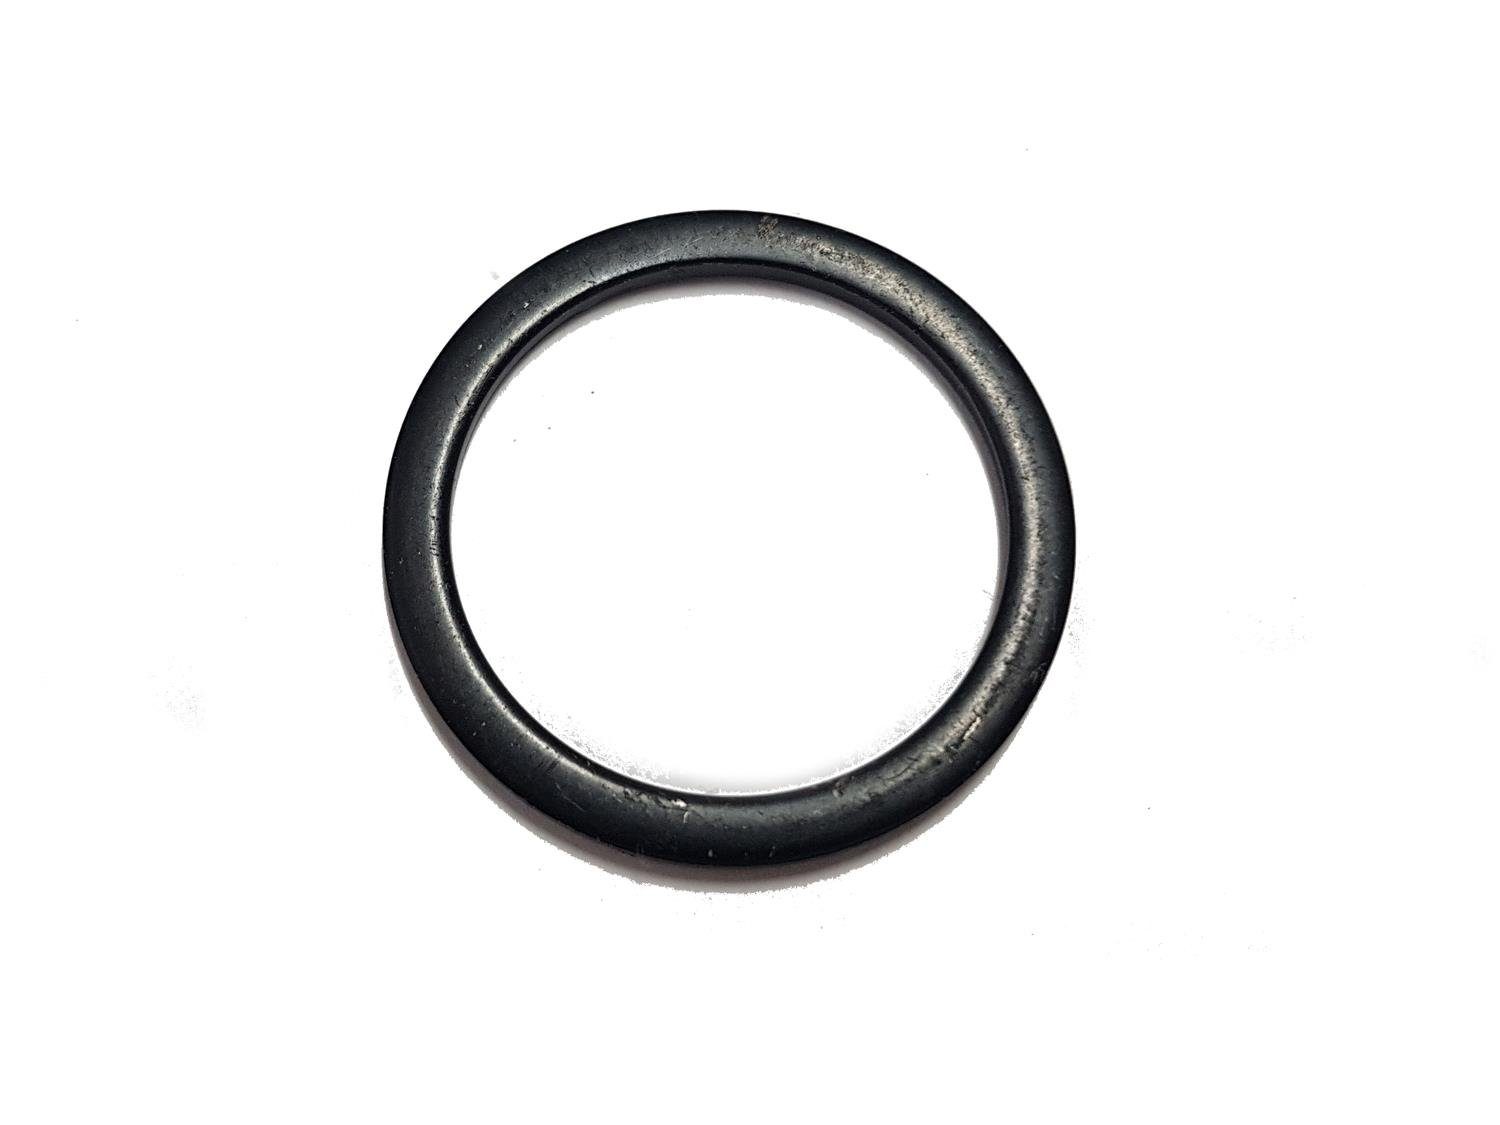 Non-Branded Lenkervorbau Fahrrad Vorbau Steuersatz schwarz Ring Zoll 1 2mm Spacer Distanz 1/8